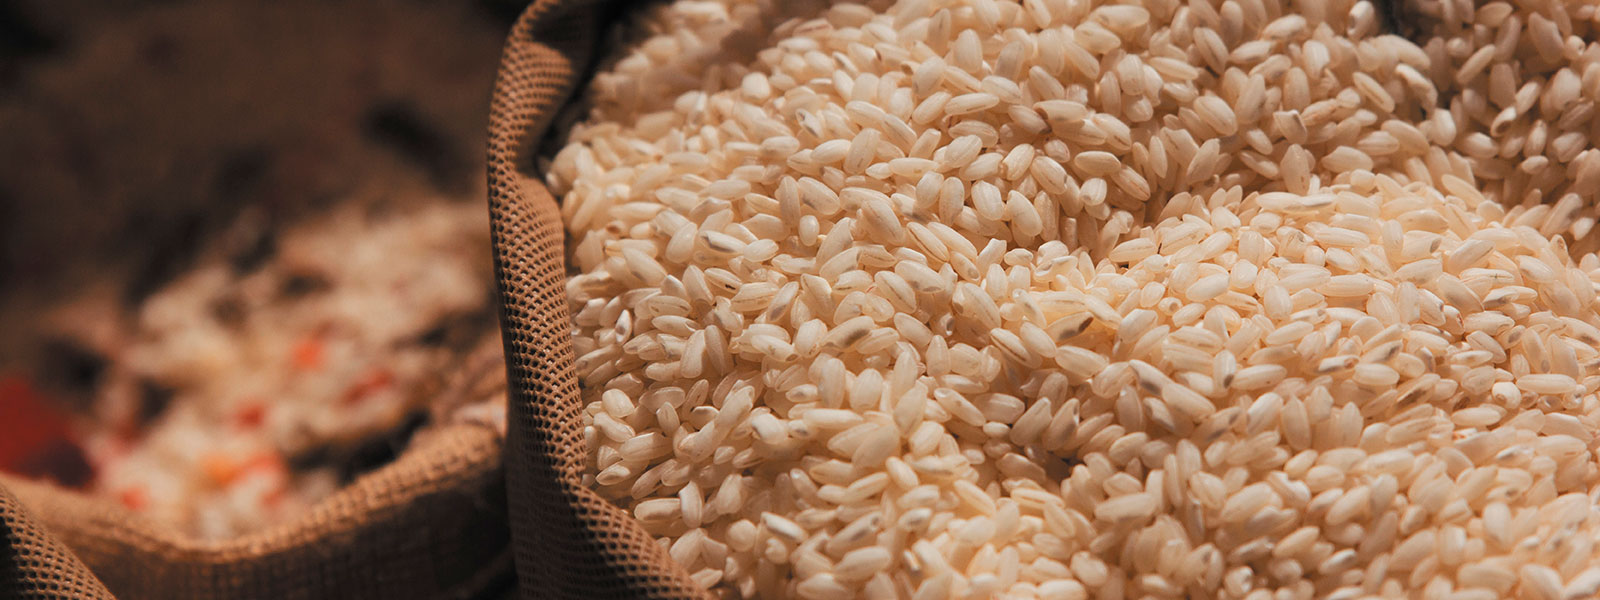 Ein großer Sack mit braunen Reiskörnern